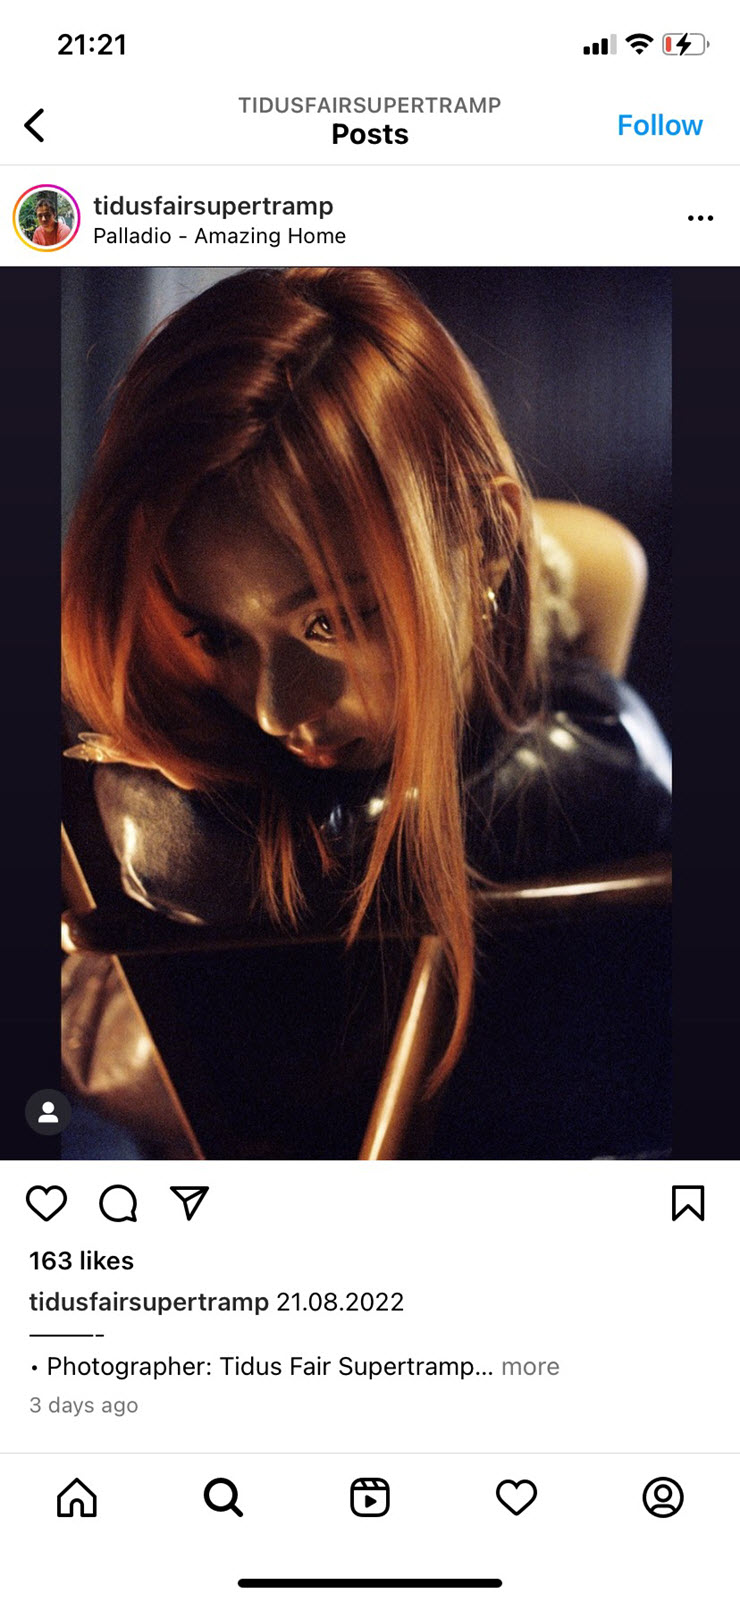 Theo tìm hiểu, những bức ảnh mới của nữ stream được đăng tải trên trang Instagram cá nhân của nghệ sĩ nhiếp ảnh Tidus Fair Supertramp.